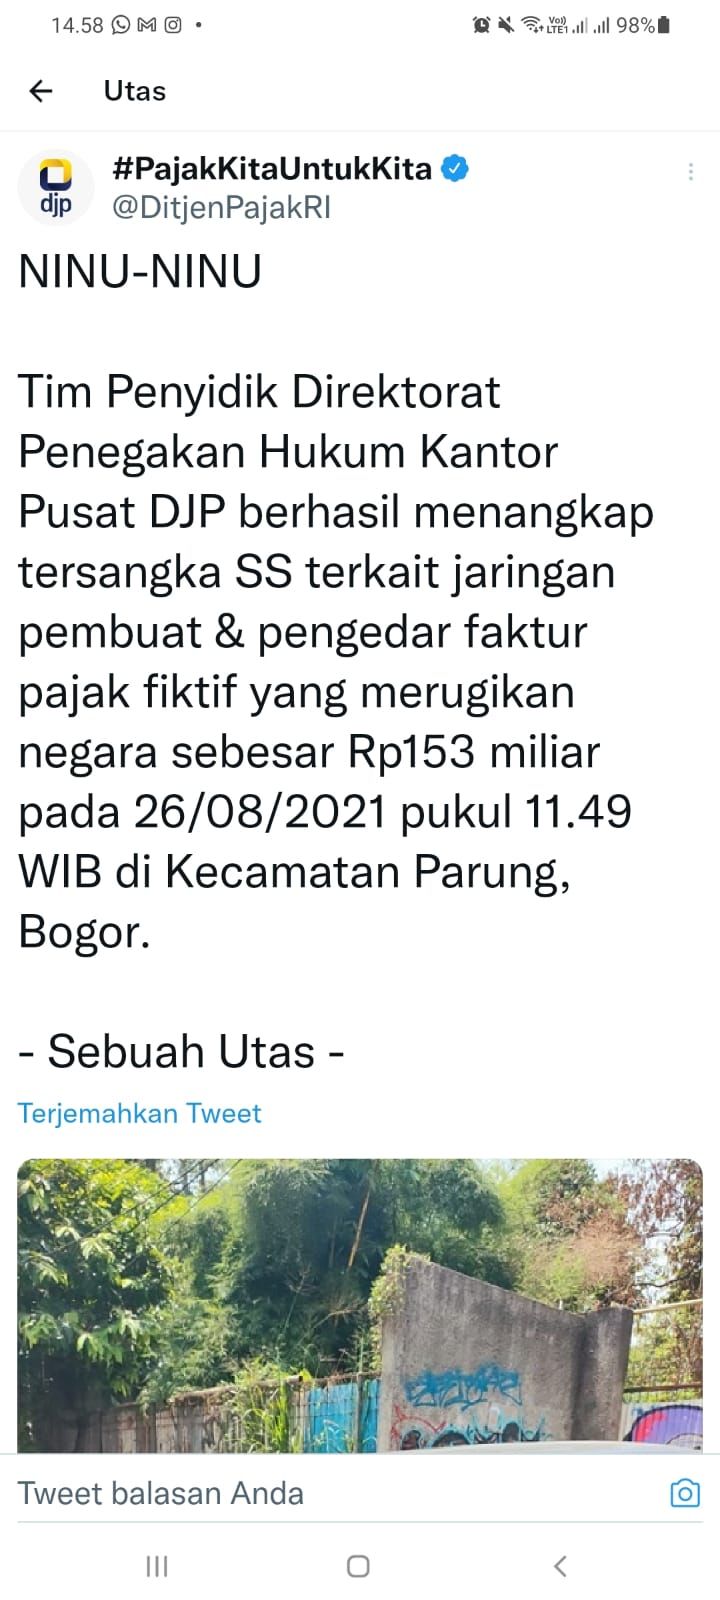 Informasi penangkapan tersangka SS akun @DitjenPajakRI